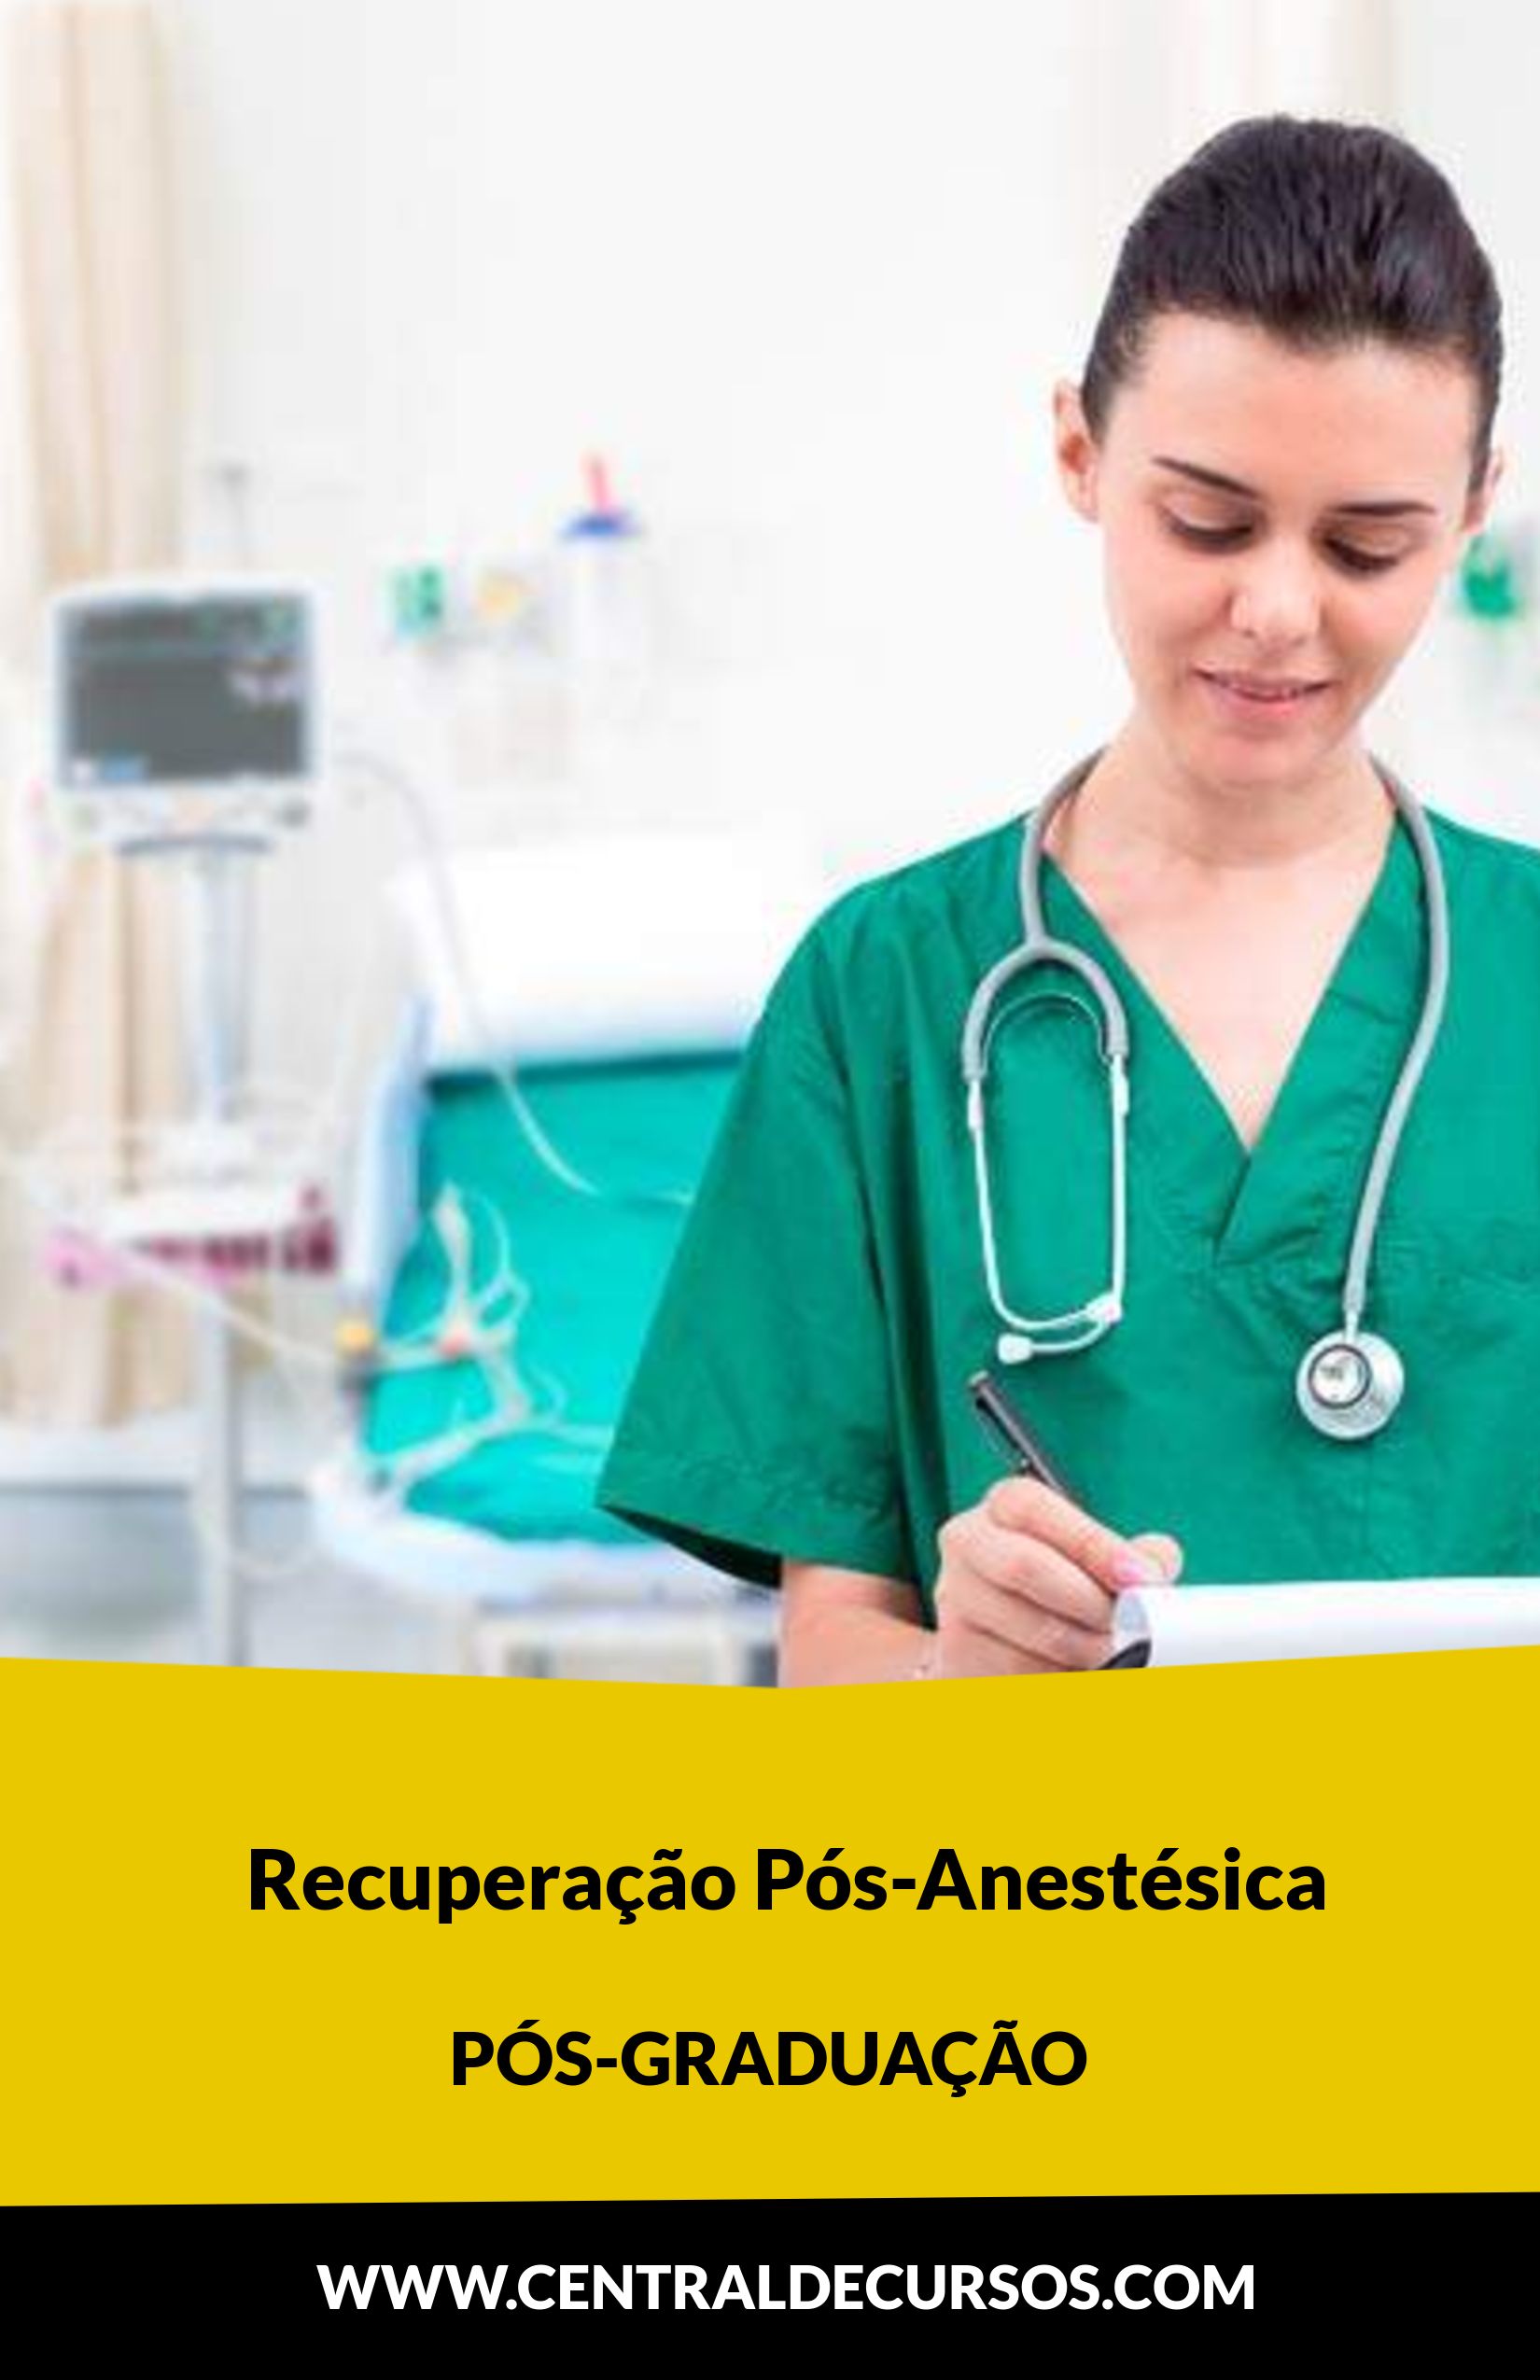 Pós-graduação em recuperação pós-anestésica